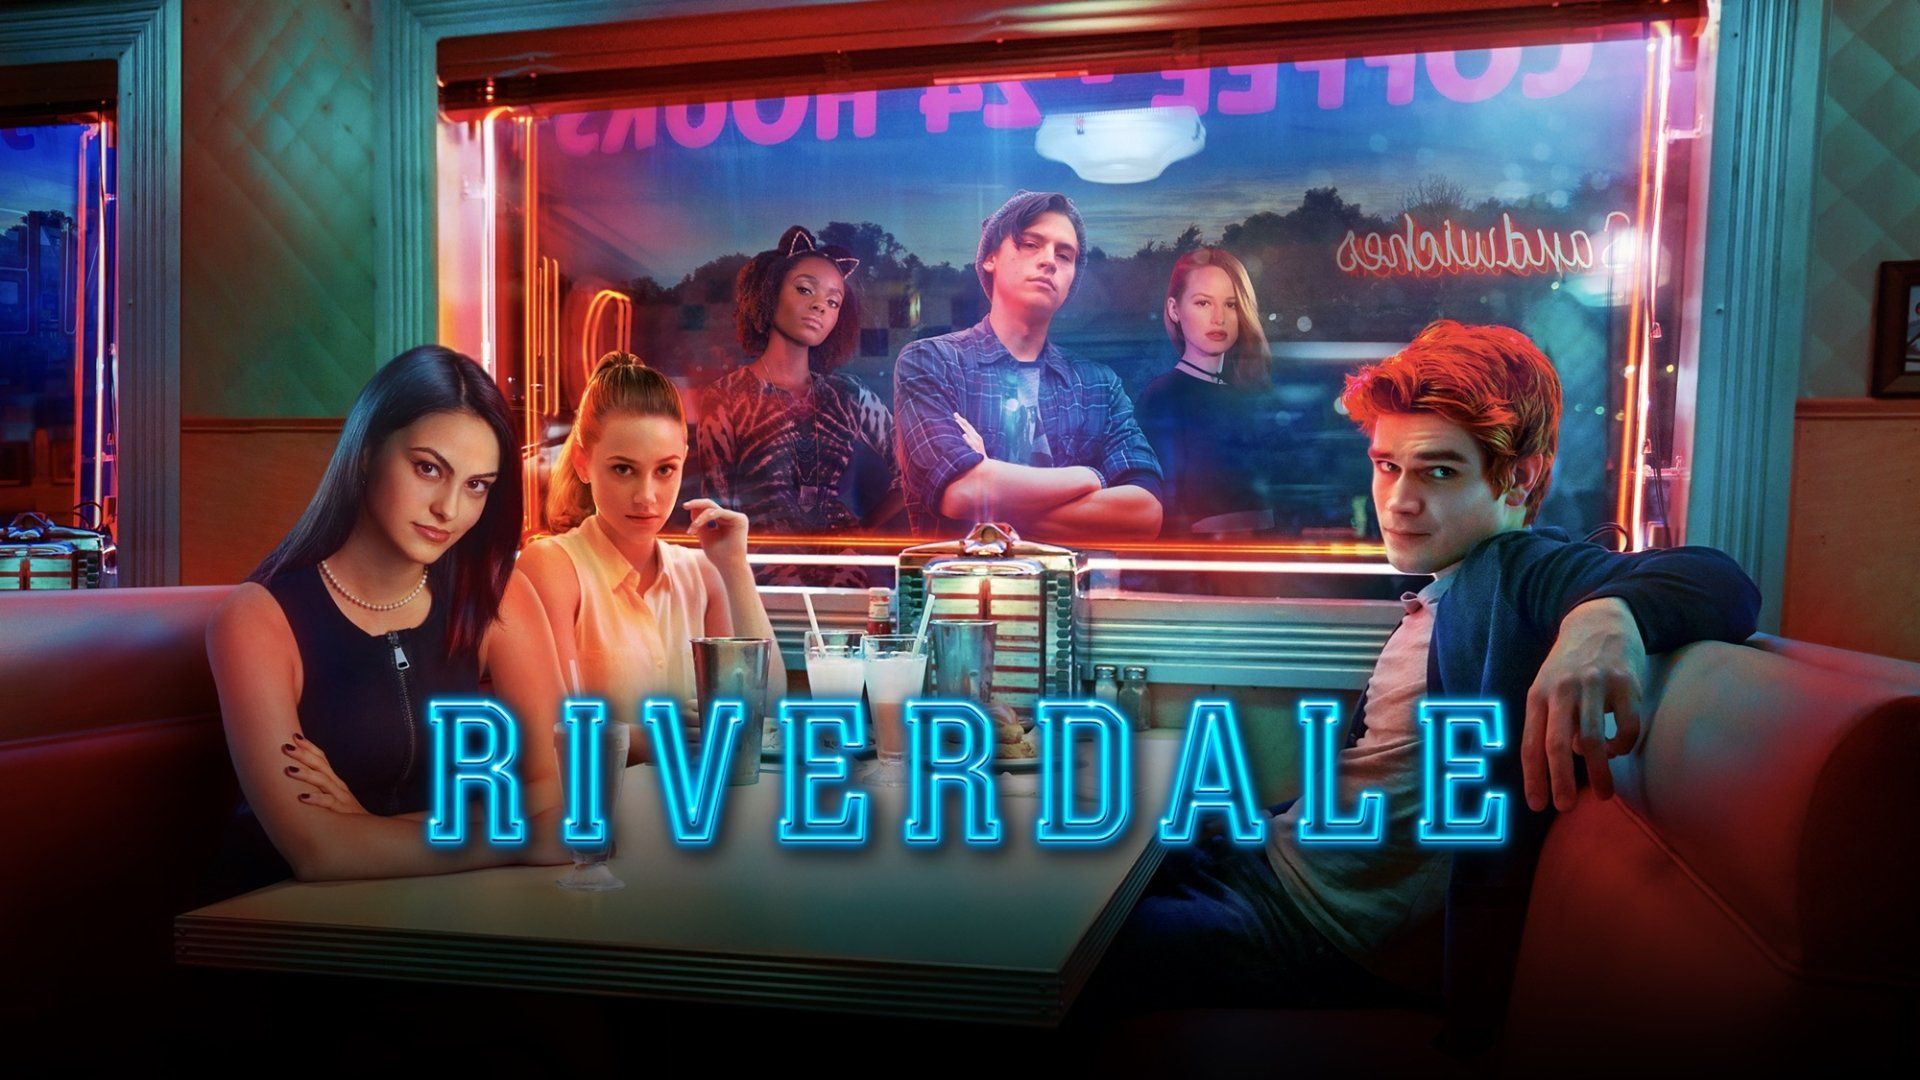 Riverdale season 3 episode poster - Riverdale